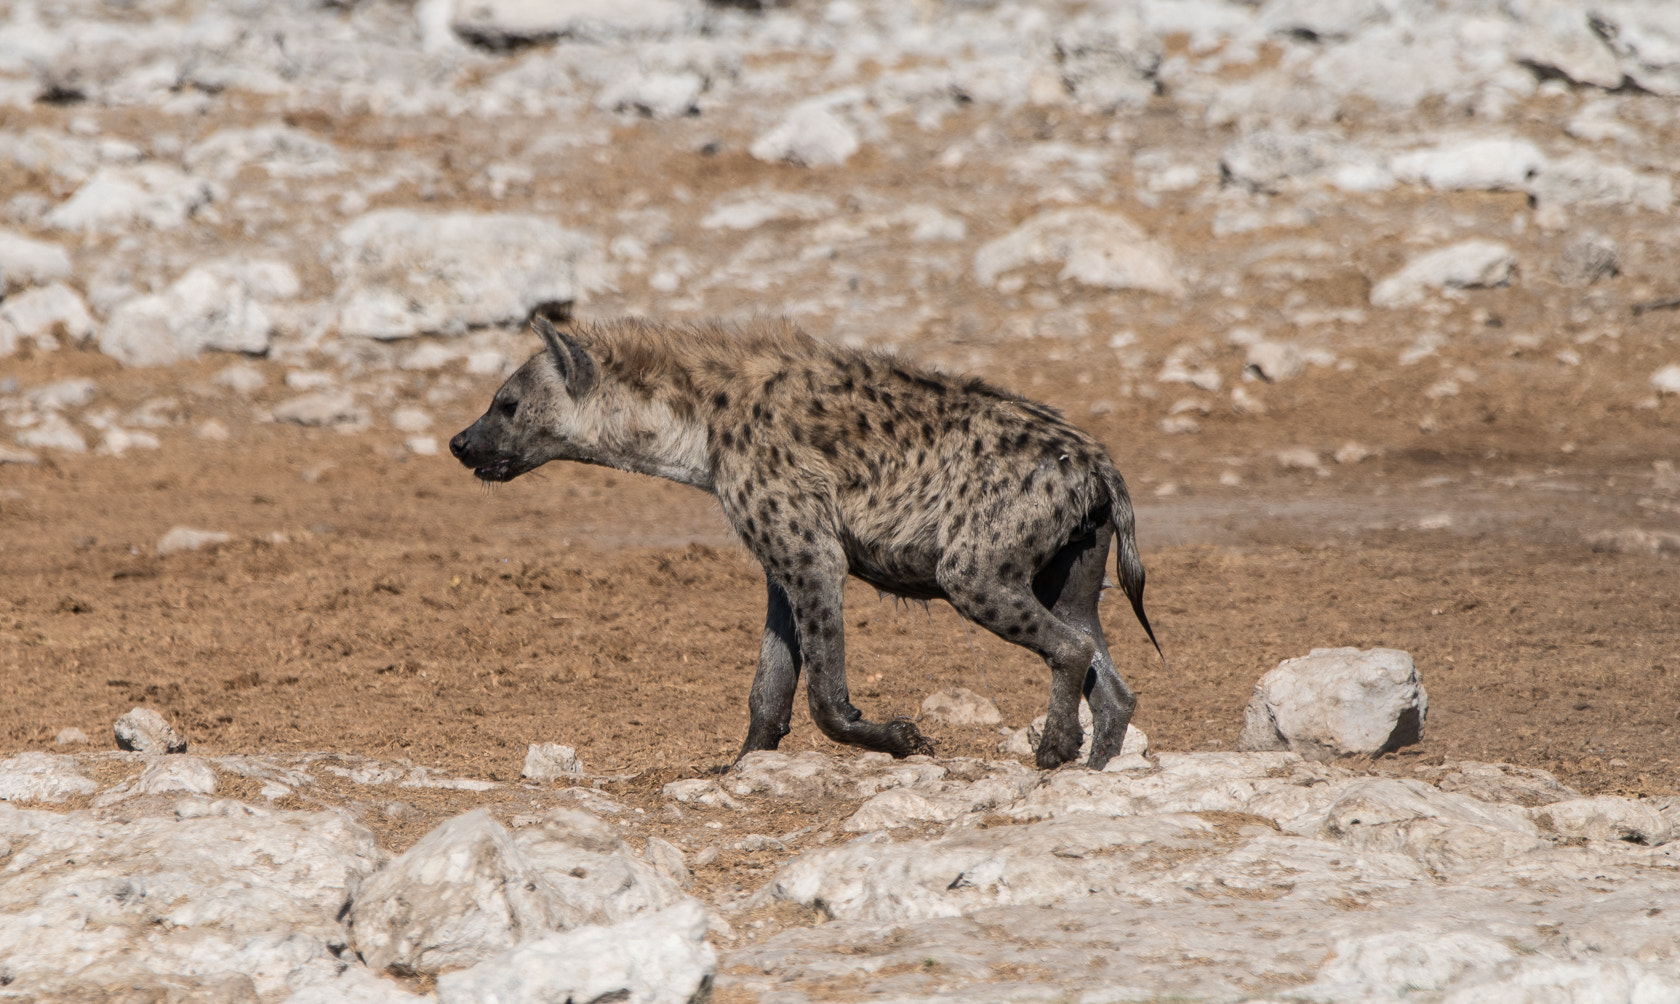 Sony a6300 + Sony 70-400mm F4-5.6 G SSM II sample photo. Spotted hyena, etosha, namibia photography